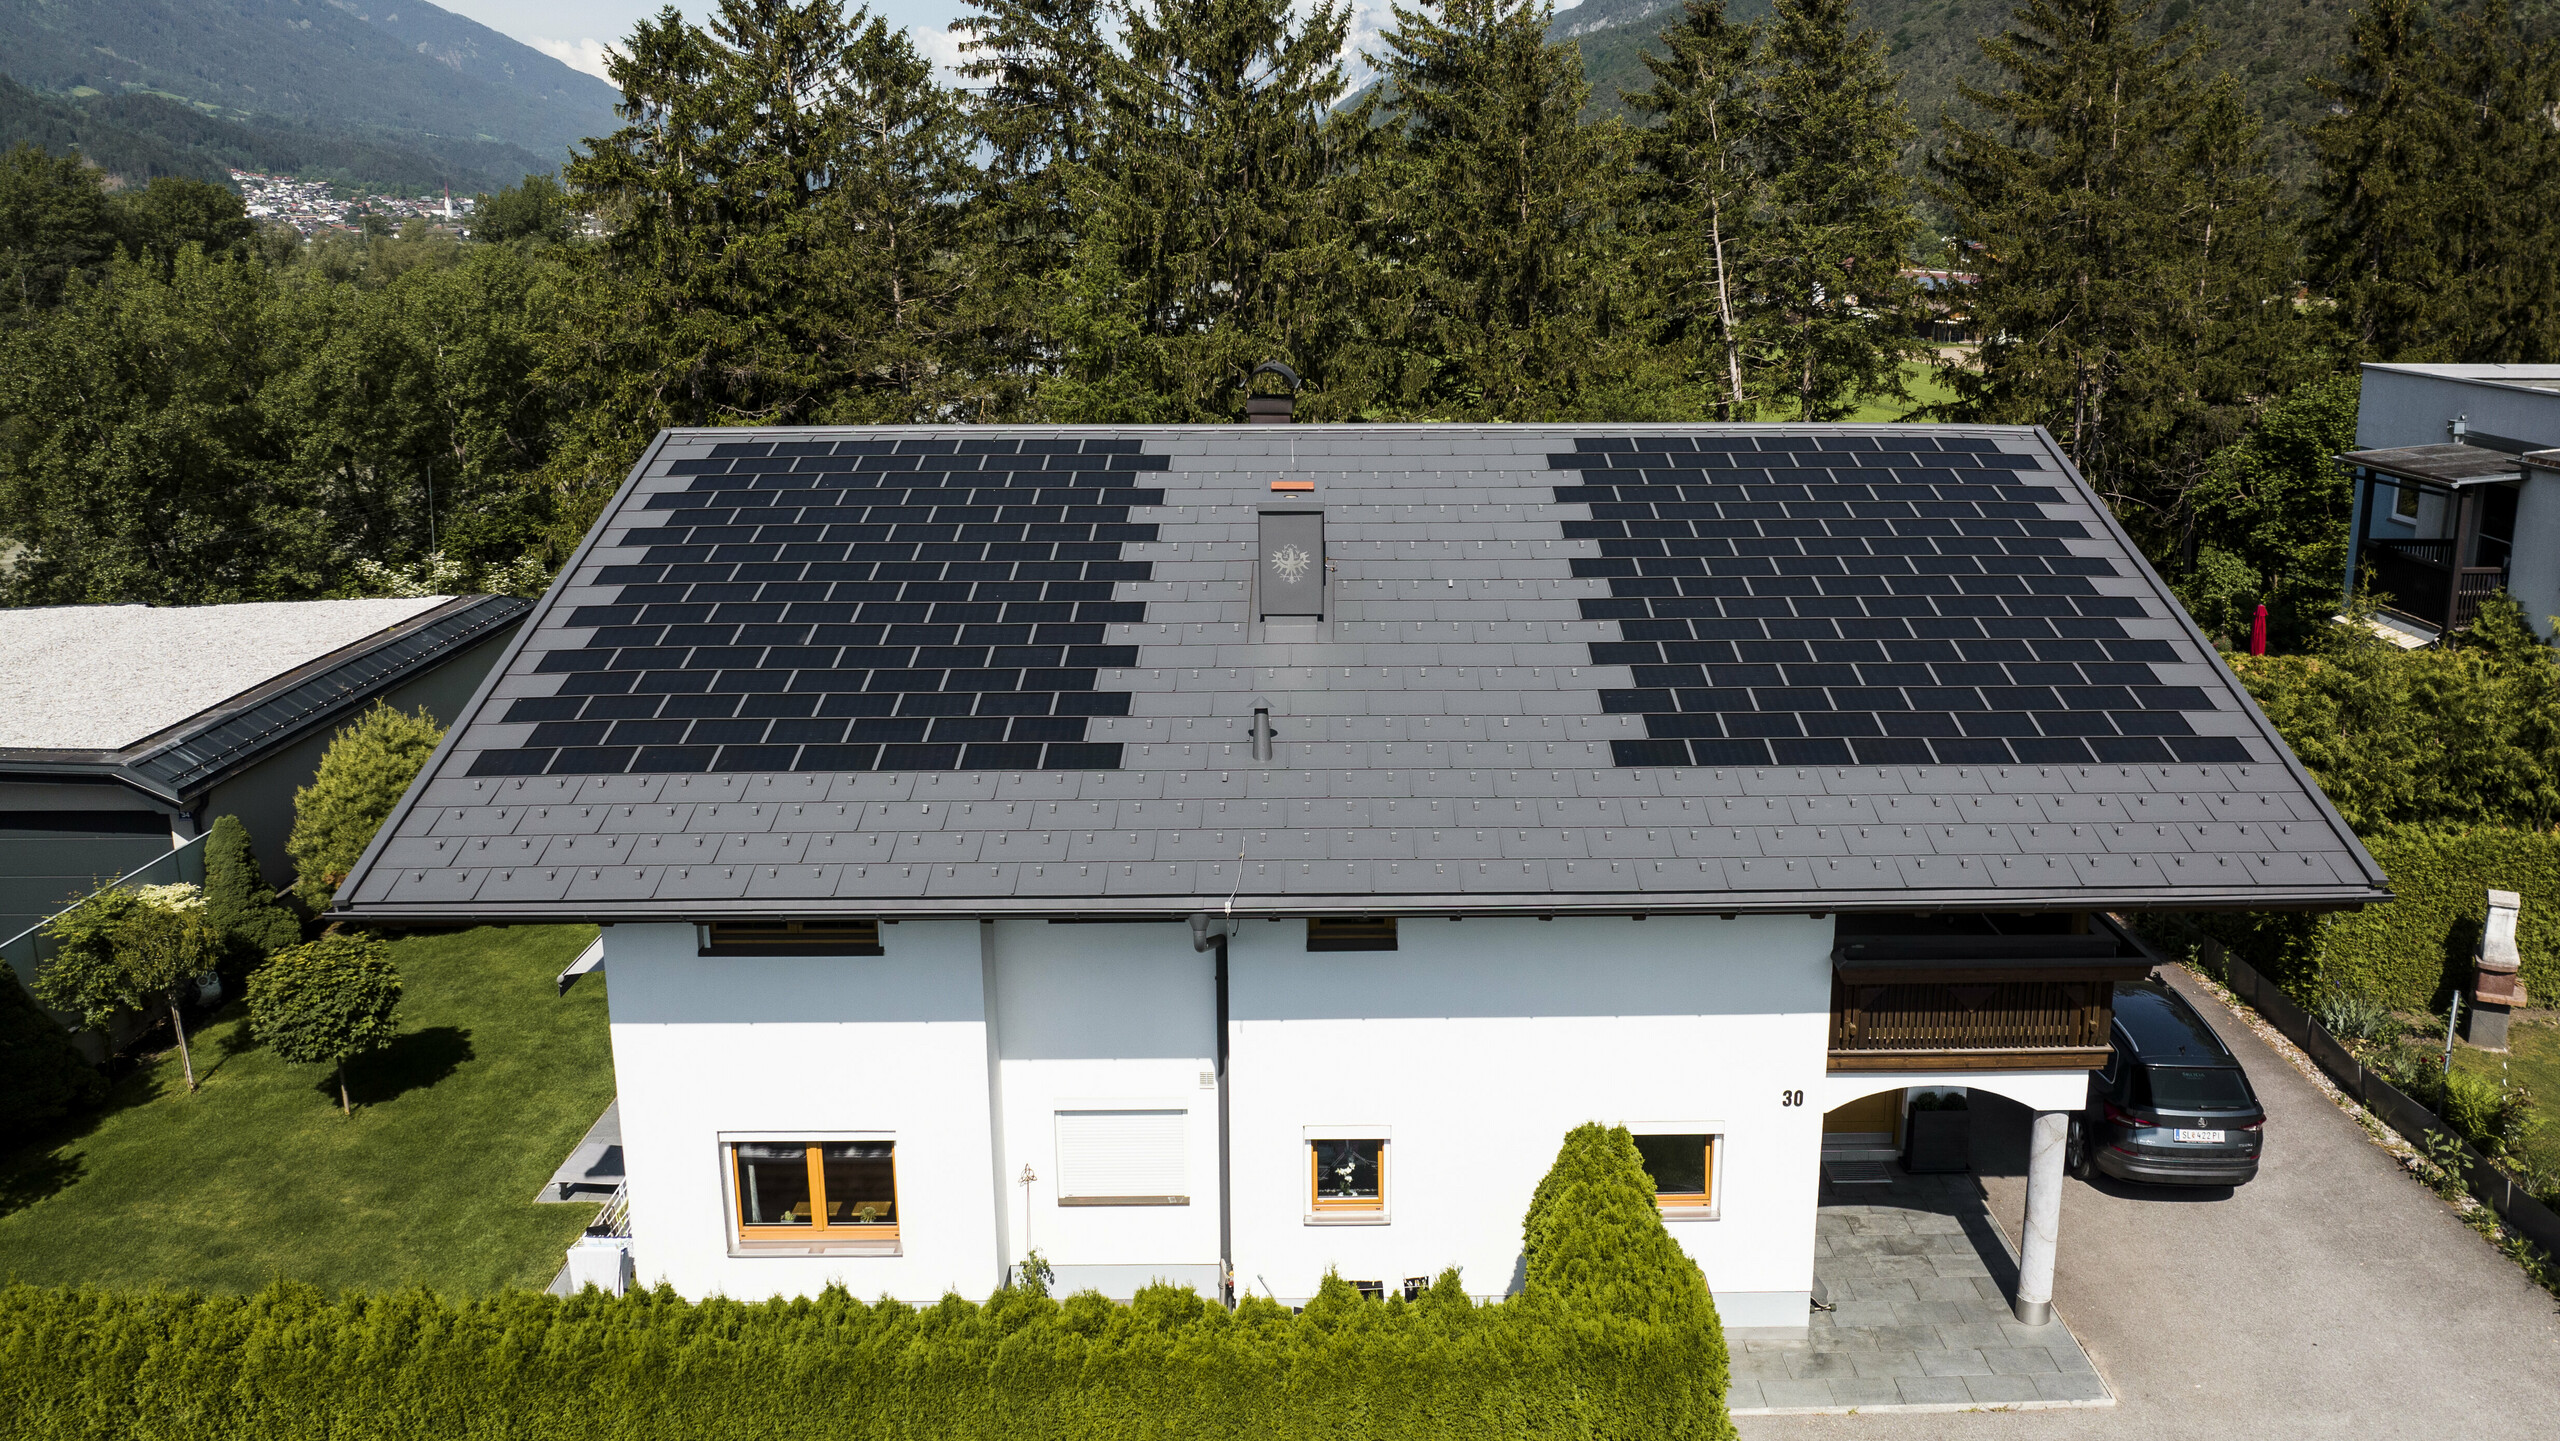 Nous pouvons apercevoir une maison familiale recouverte des petites tuiles solaires PREFA avec le R.16 dans la teinte P.10 gris sombre, dans un paysage rural.